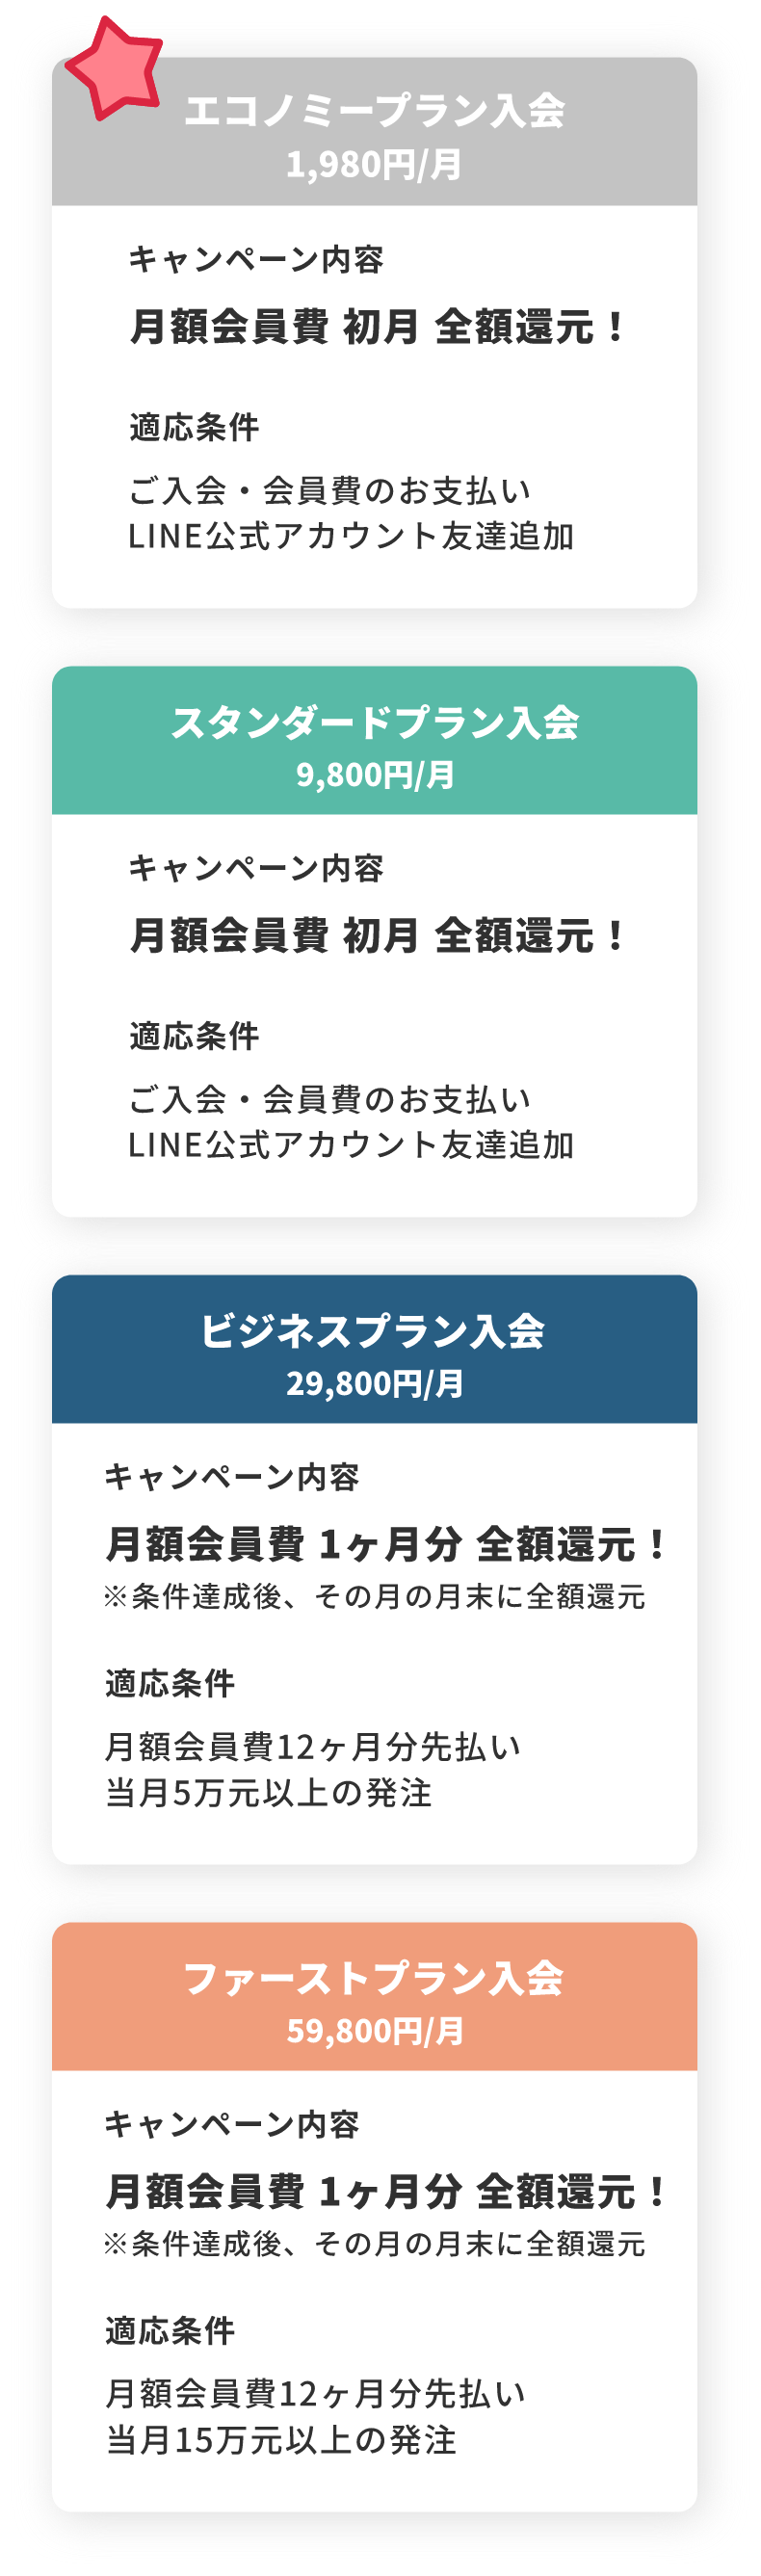 新規ご入会・LINE公式アカウント友達追加特典